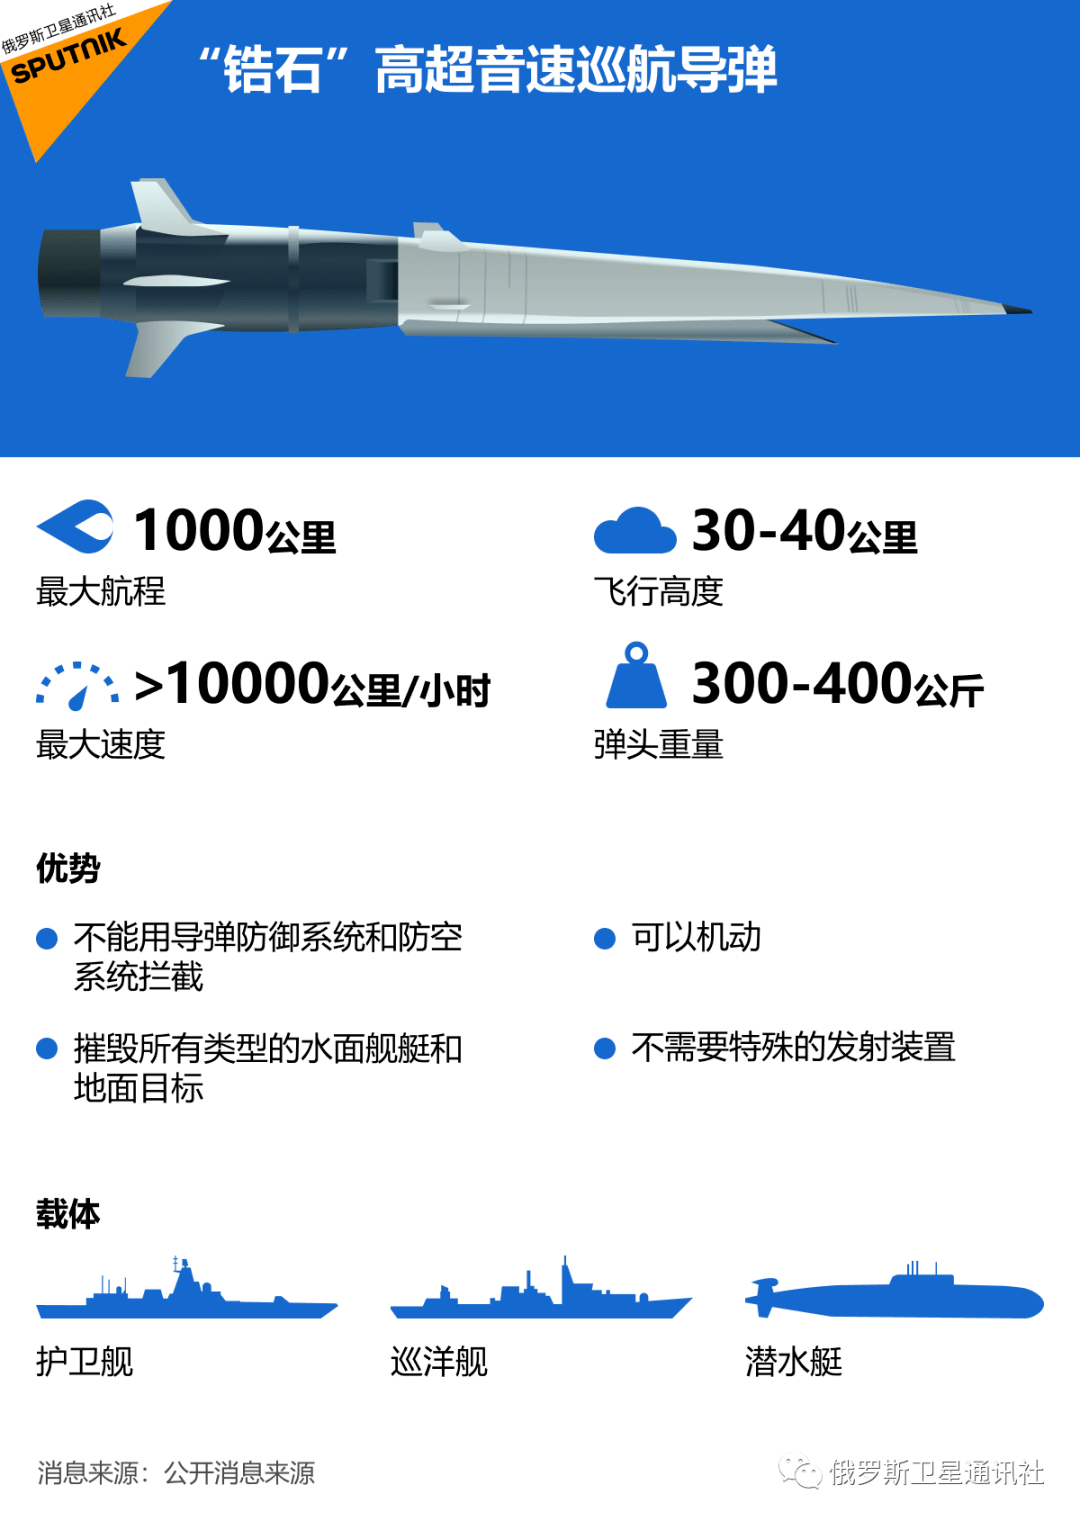 俄罗斯制造了世界上第一枚海基高超音速巡航导弹"锆石".